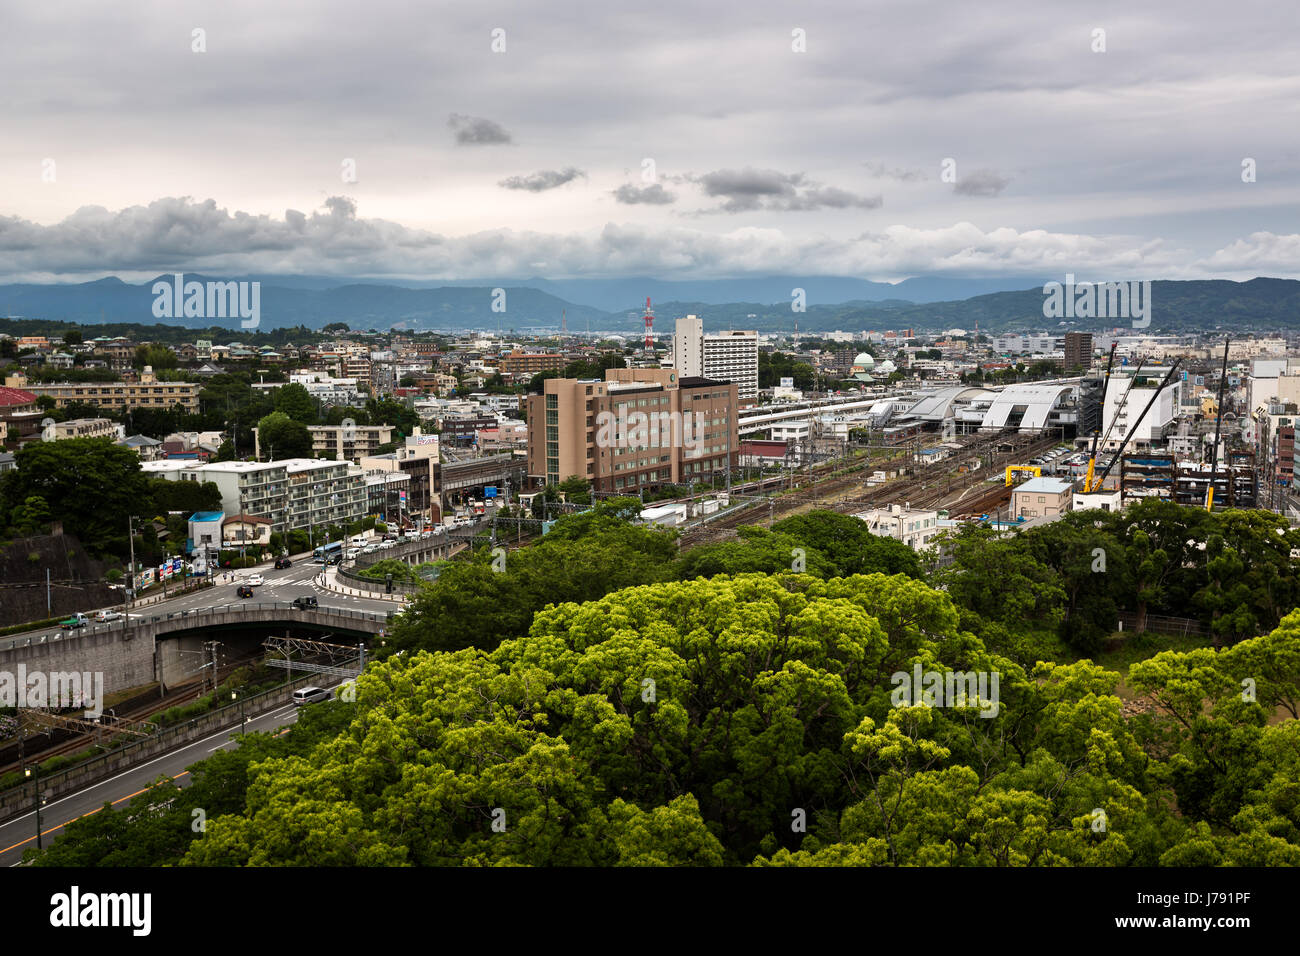 ODAWARA, JAPAN - 8. Juni 2015: Aerial View Odawara Stadt in der Präfektur Kanagawa, Japan. Odawara Bevölkerung beläuft sich auf rund 200 000 Einwohner Stockfoto